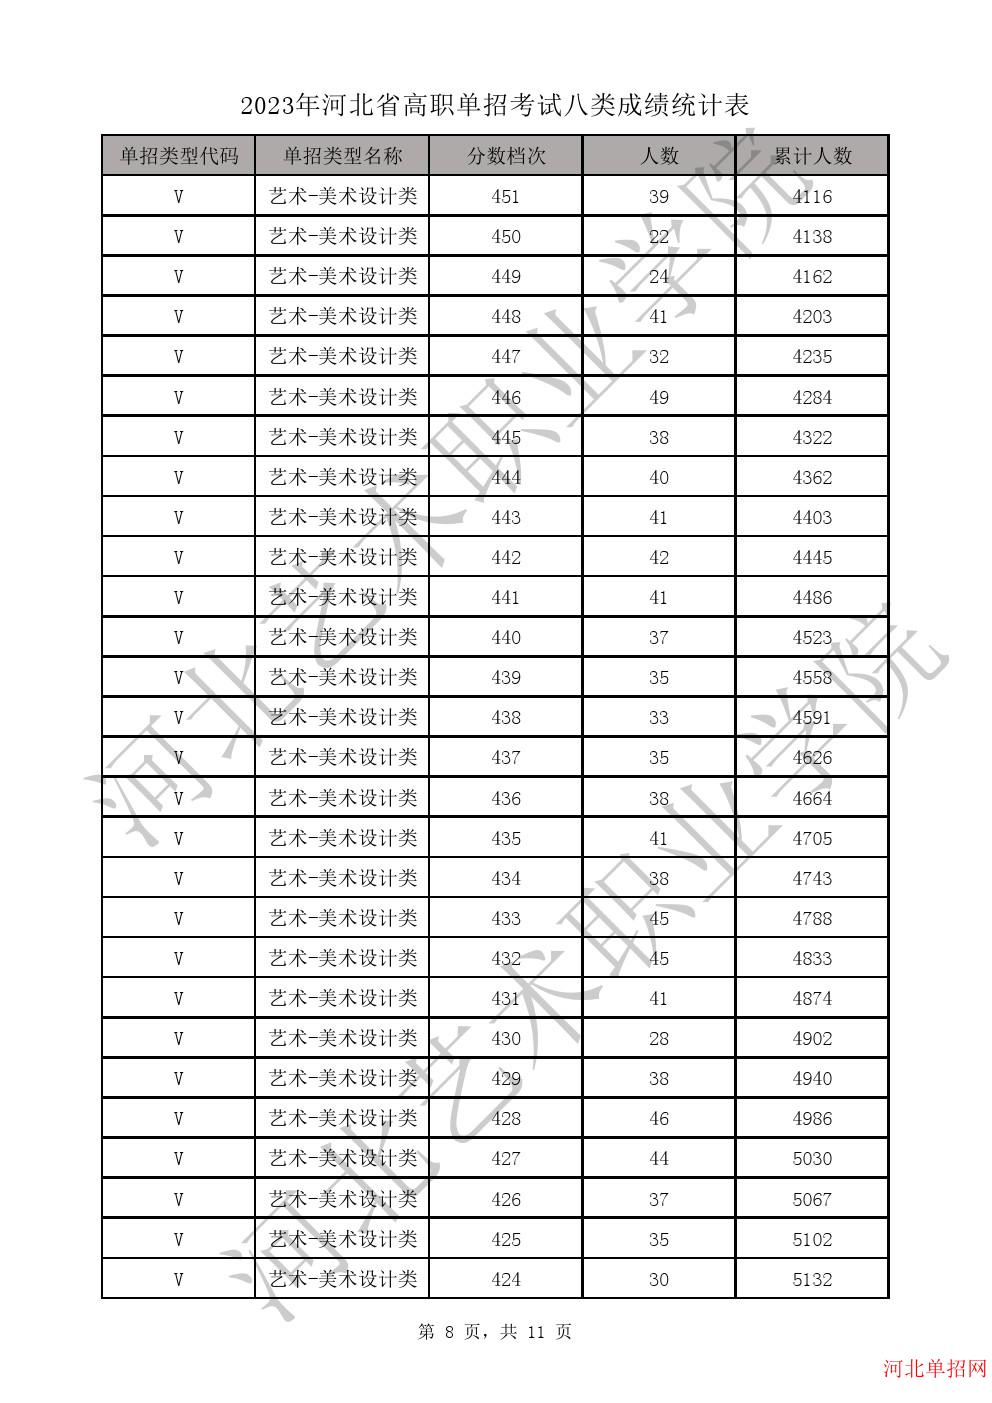 2023年河北省高职单招考试八类成绩统计表-V艺术-美术设计类一分一档表 图8